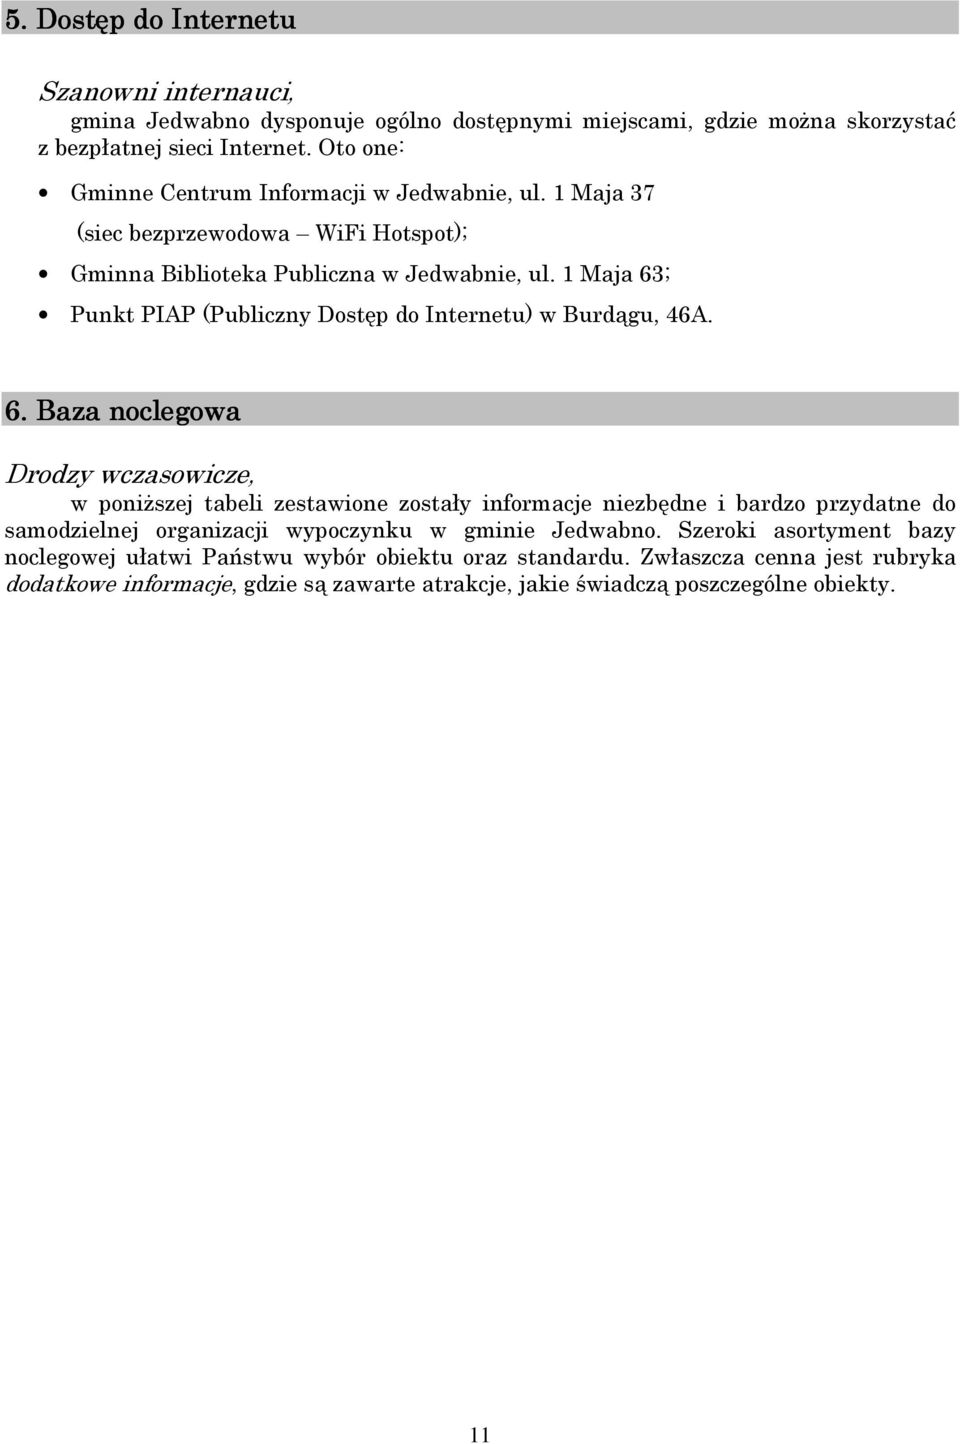 1 Maja 63; Punkt PIAP (Publiczny Dostęp do Internetu) w Burdągu, 46A. 6. Baza noclegowa Drodzy wczasowicze, w poniższej tabeli zestawione zostały informacje niezbędne i bardzo przydatne do samodzielnej organizacji wypoczynku w gminie Jedwabno.